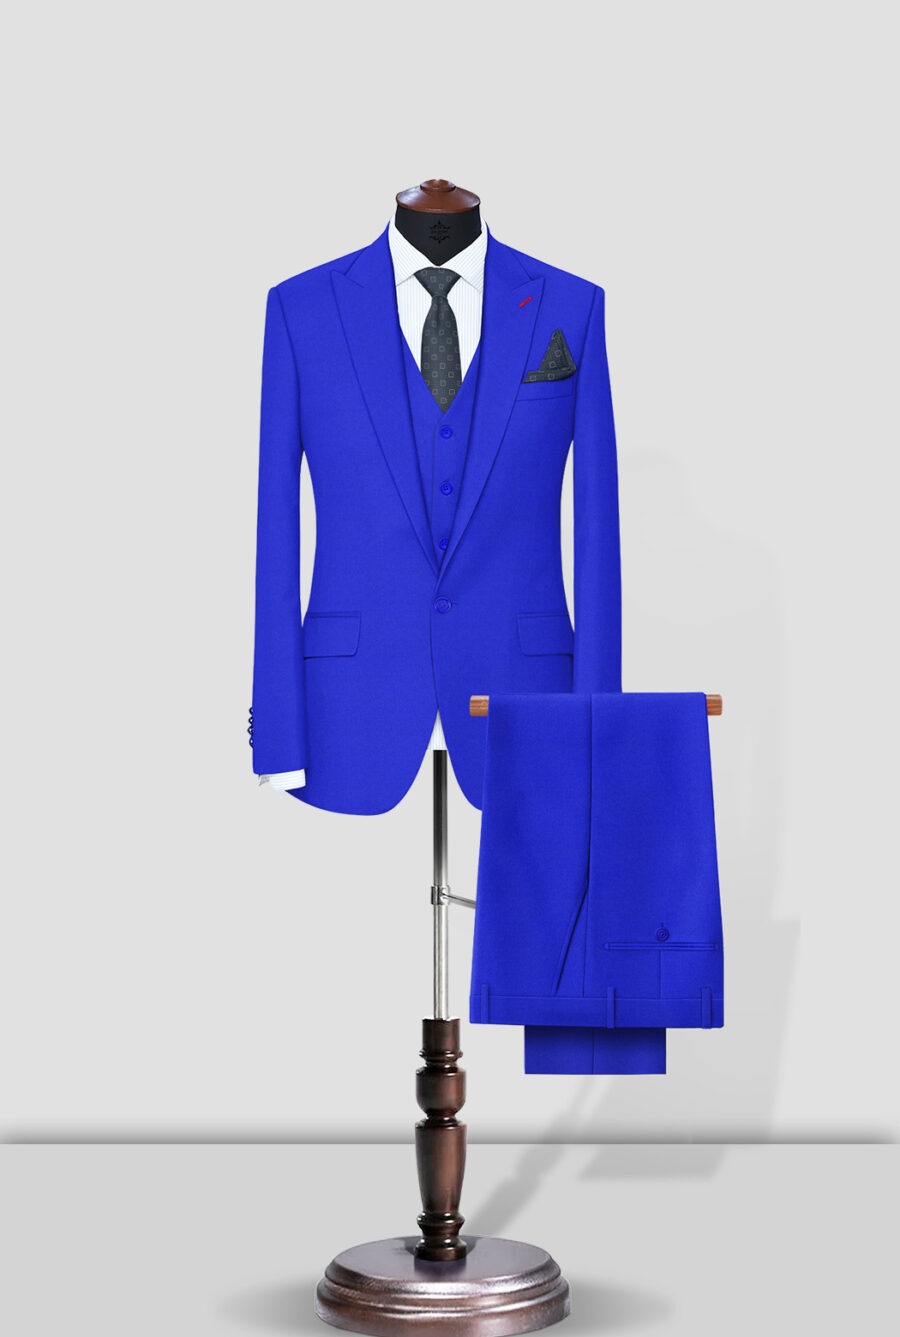 Mens Blue Suit, Royal Blue Suit